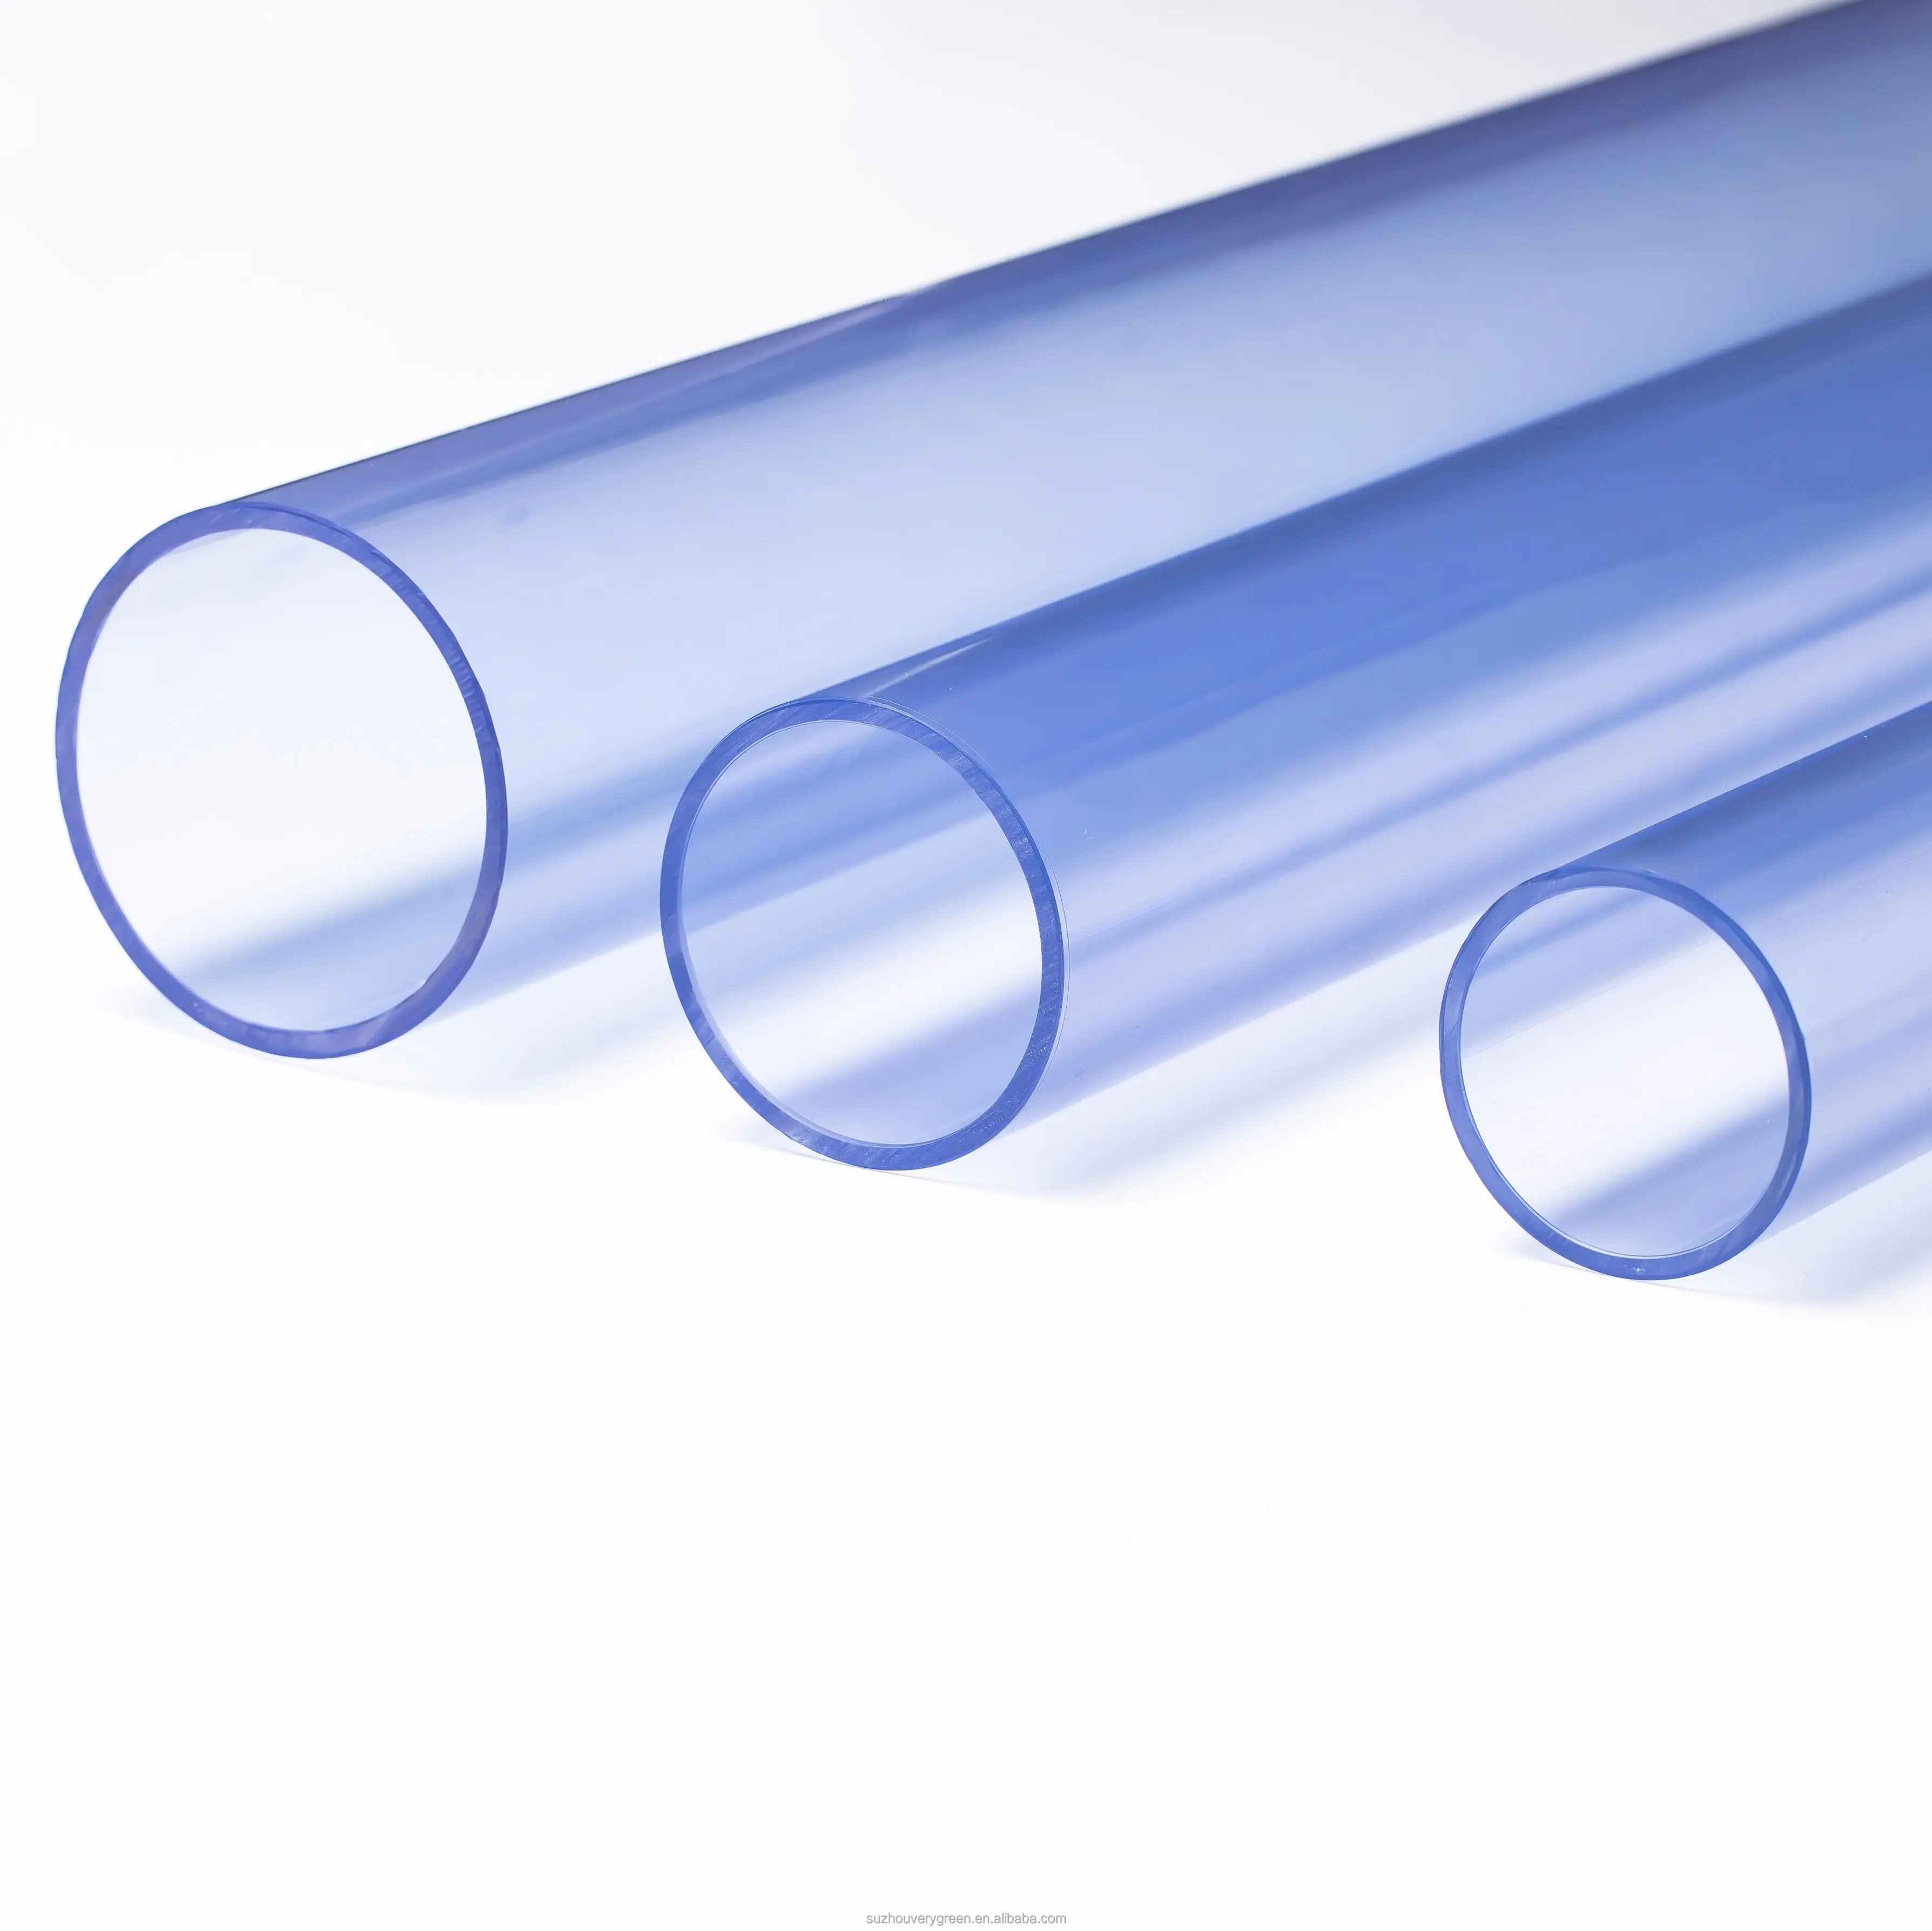 4 pollici IN PVC Trasparente Tubi E Raccordi Programma 40 Tubo IN PVC di Plastica